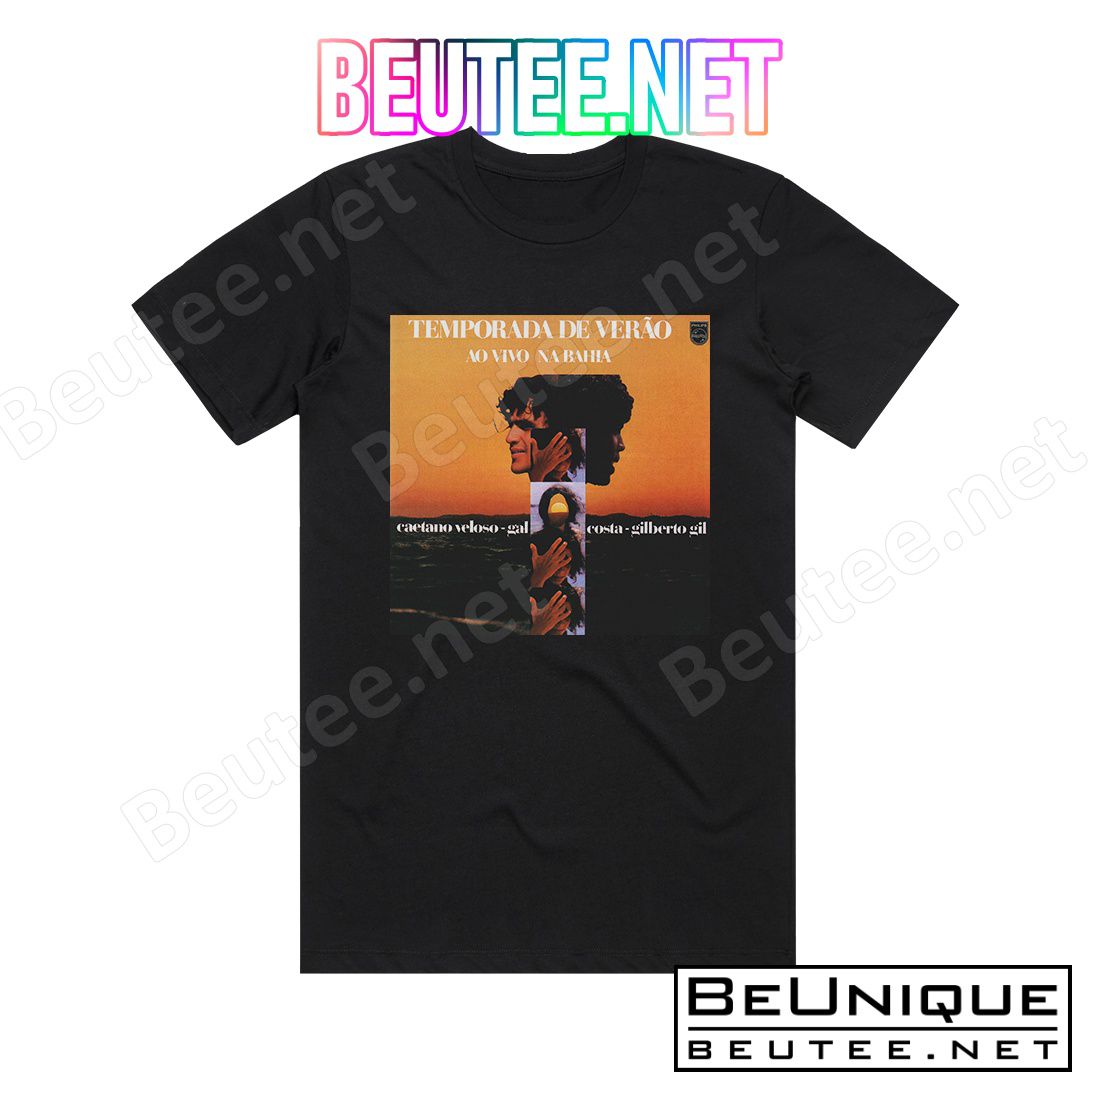 Caetano Veloso Temporada De Verao Ao Vivo Na Bahia Album Cover T-Shirt